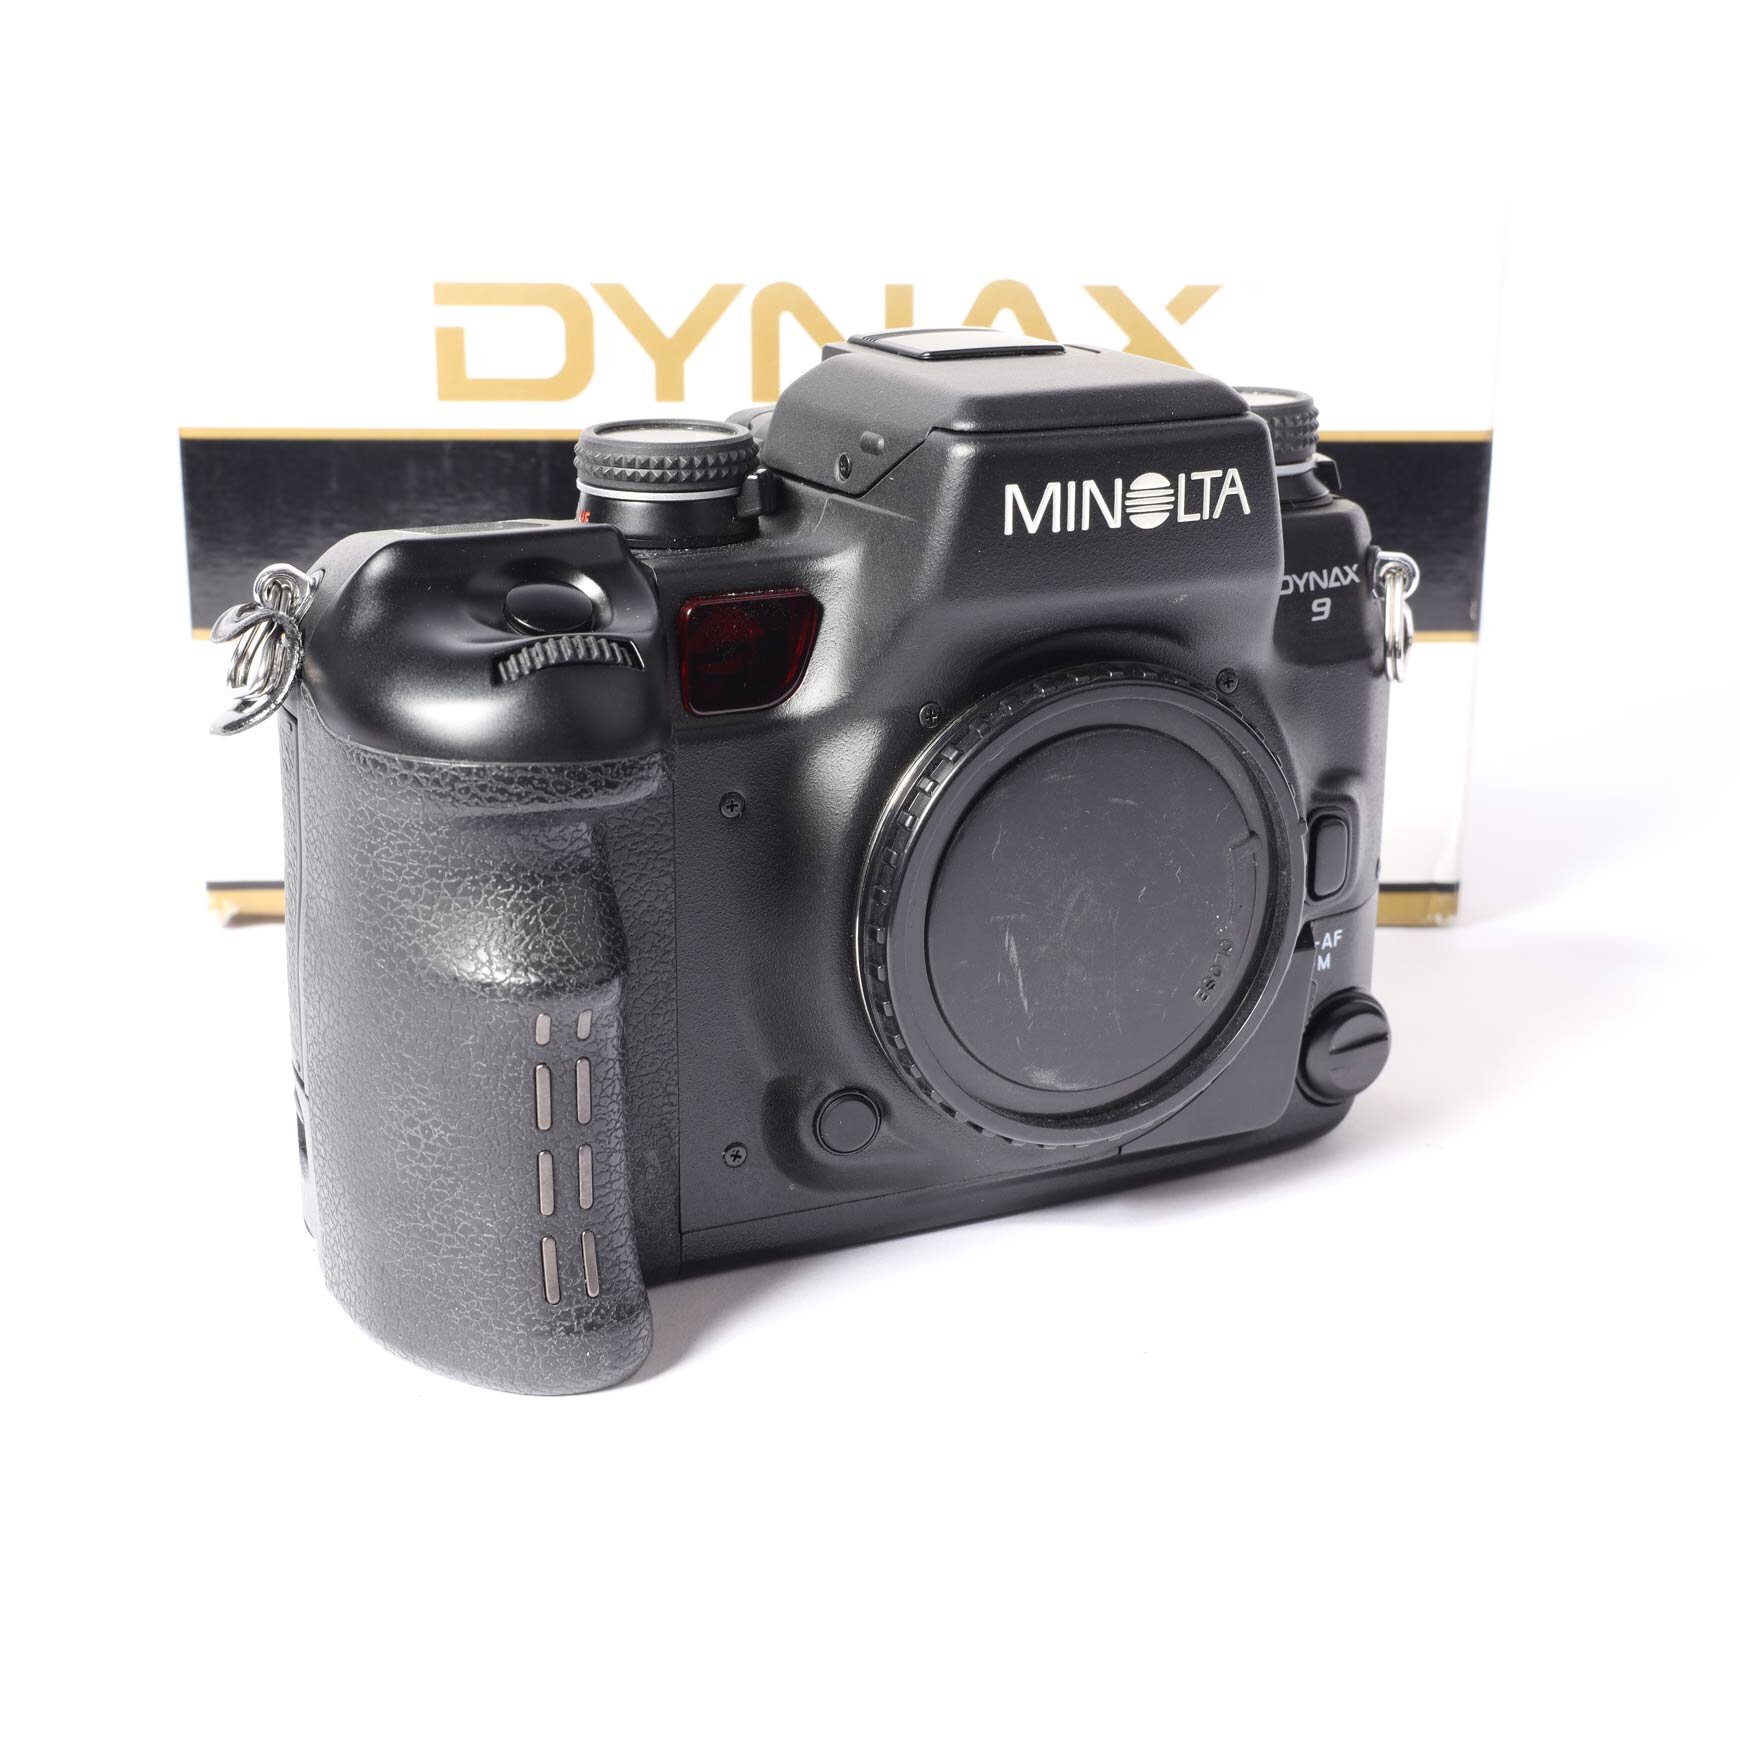 Mamiya Dynax 9 AF 1.7/50mm VC9